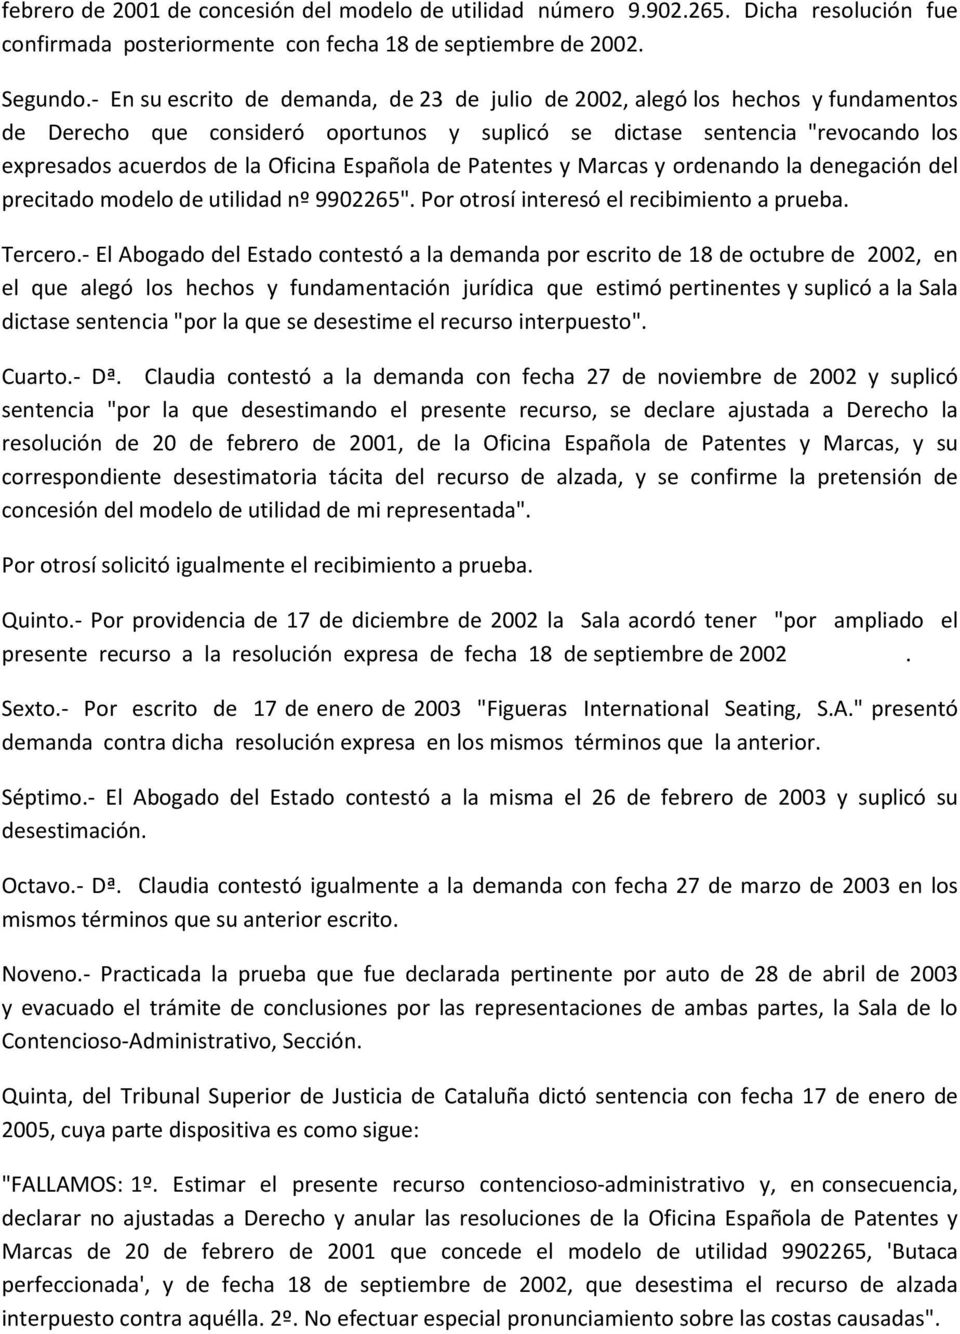 Española de Patentes y Marcas y ordenando la denegación del precitado modelo de utilidad nº 9902265". Por otrosí interesó el recibimiento a prueba. Tercero.